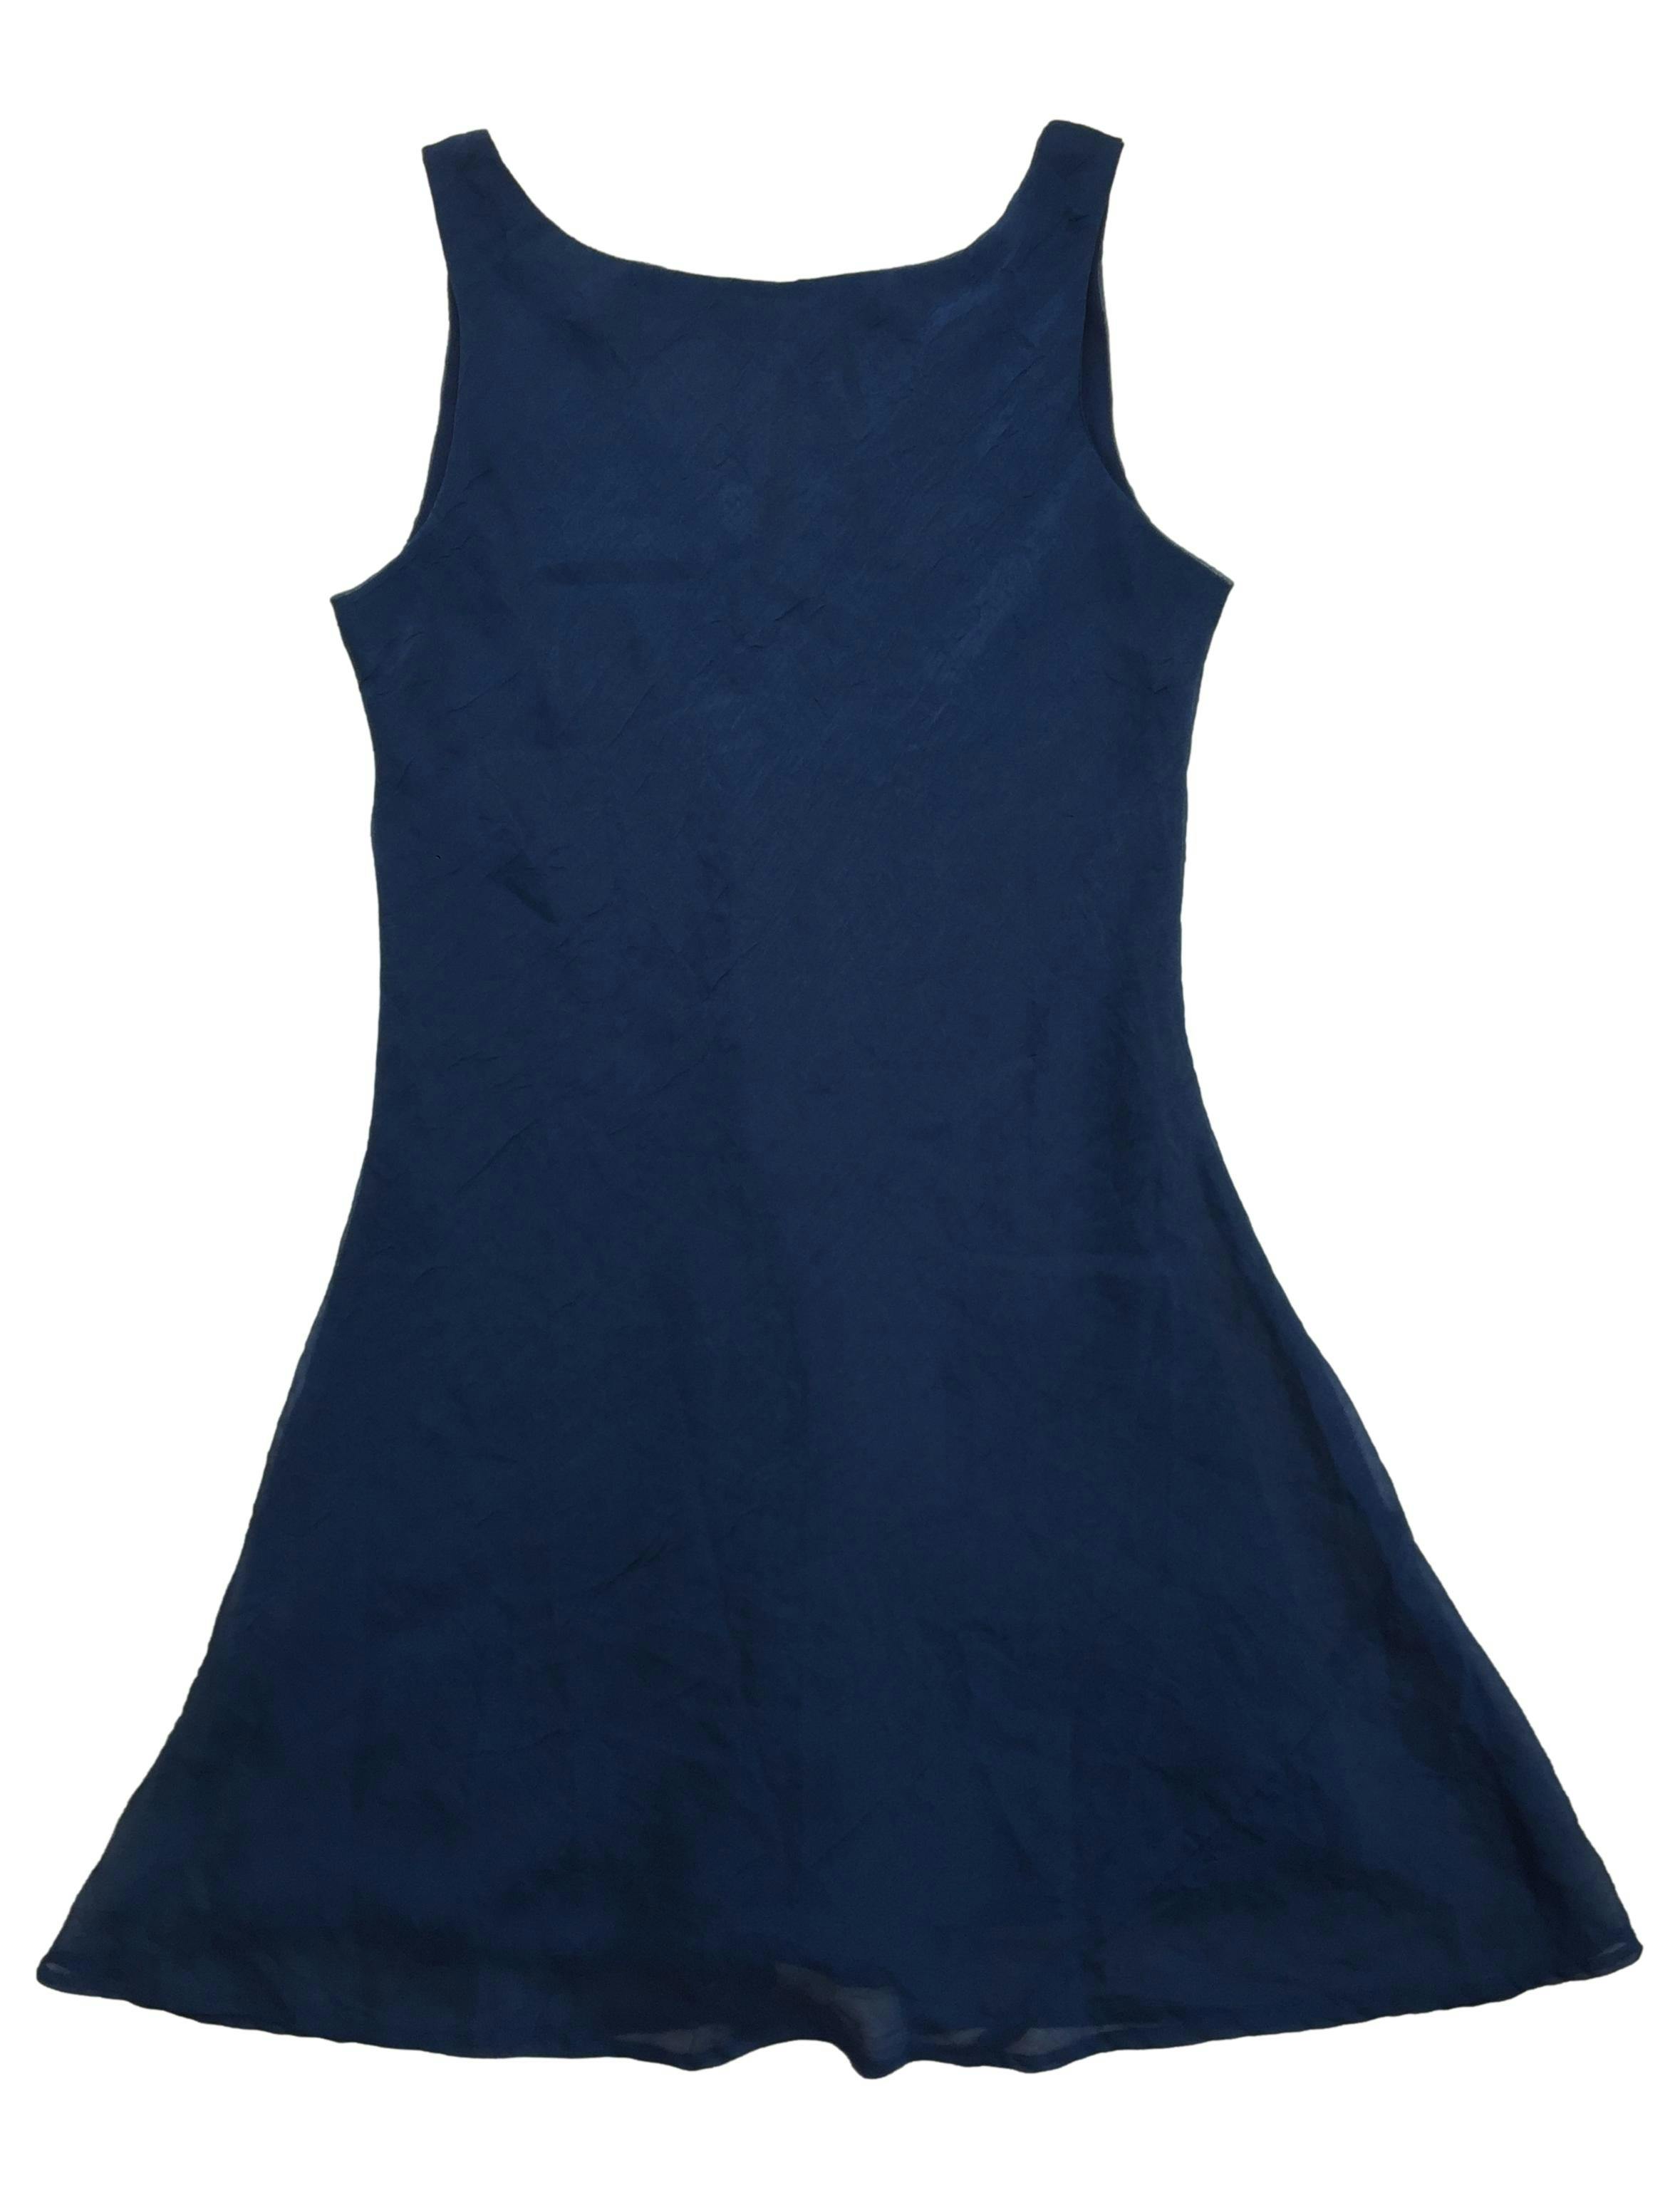 Vestido de gasa azul efecto corrugado, forrado, escote V en espalda. Busto 100cm Largo 90cm